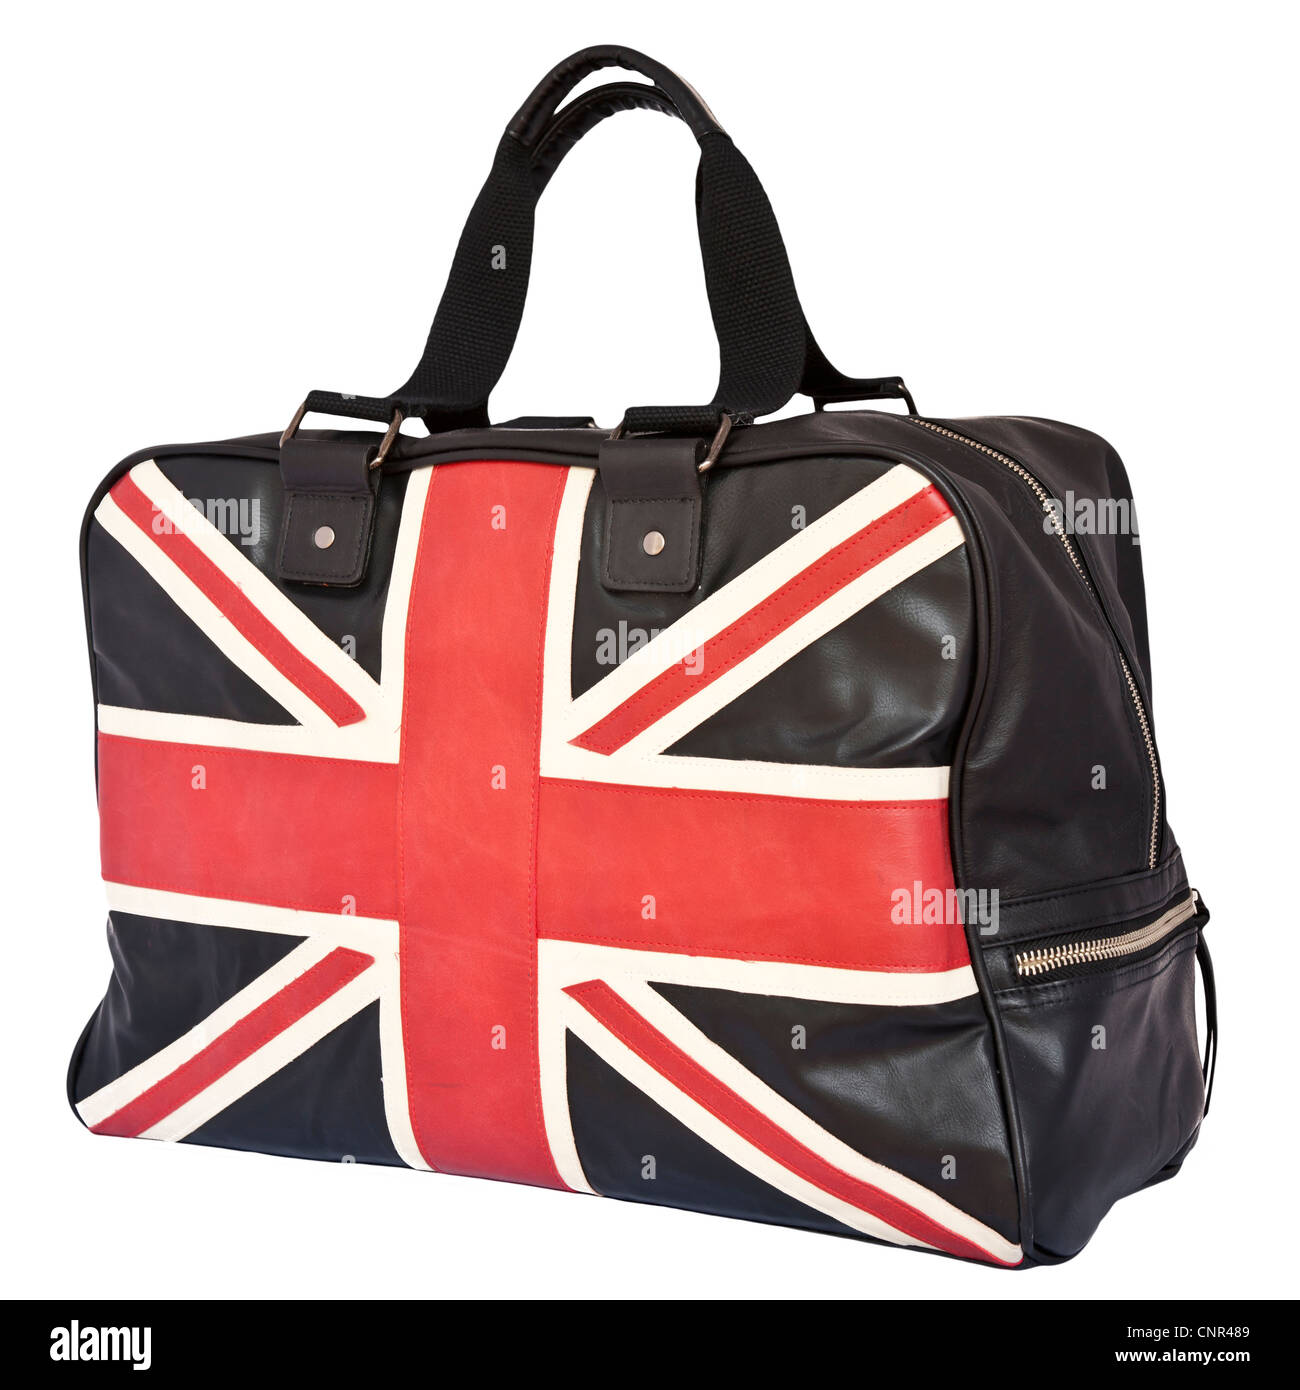 Union Jack Flag on black leather handbag, isolated background